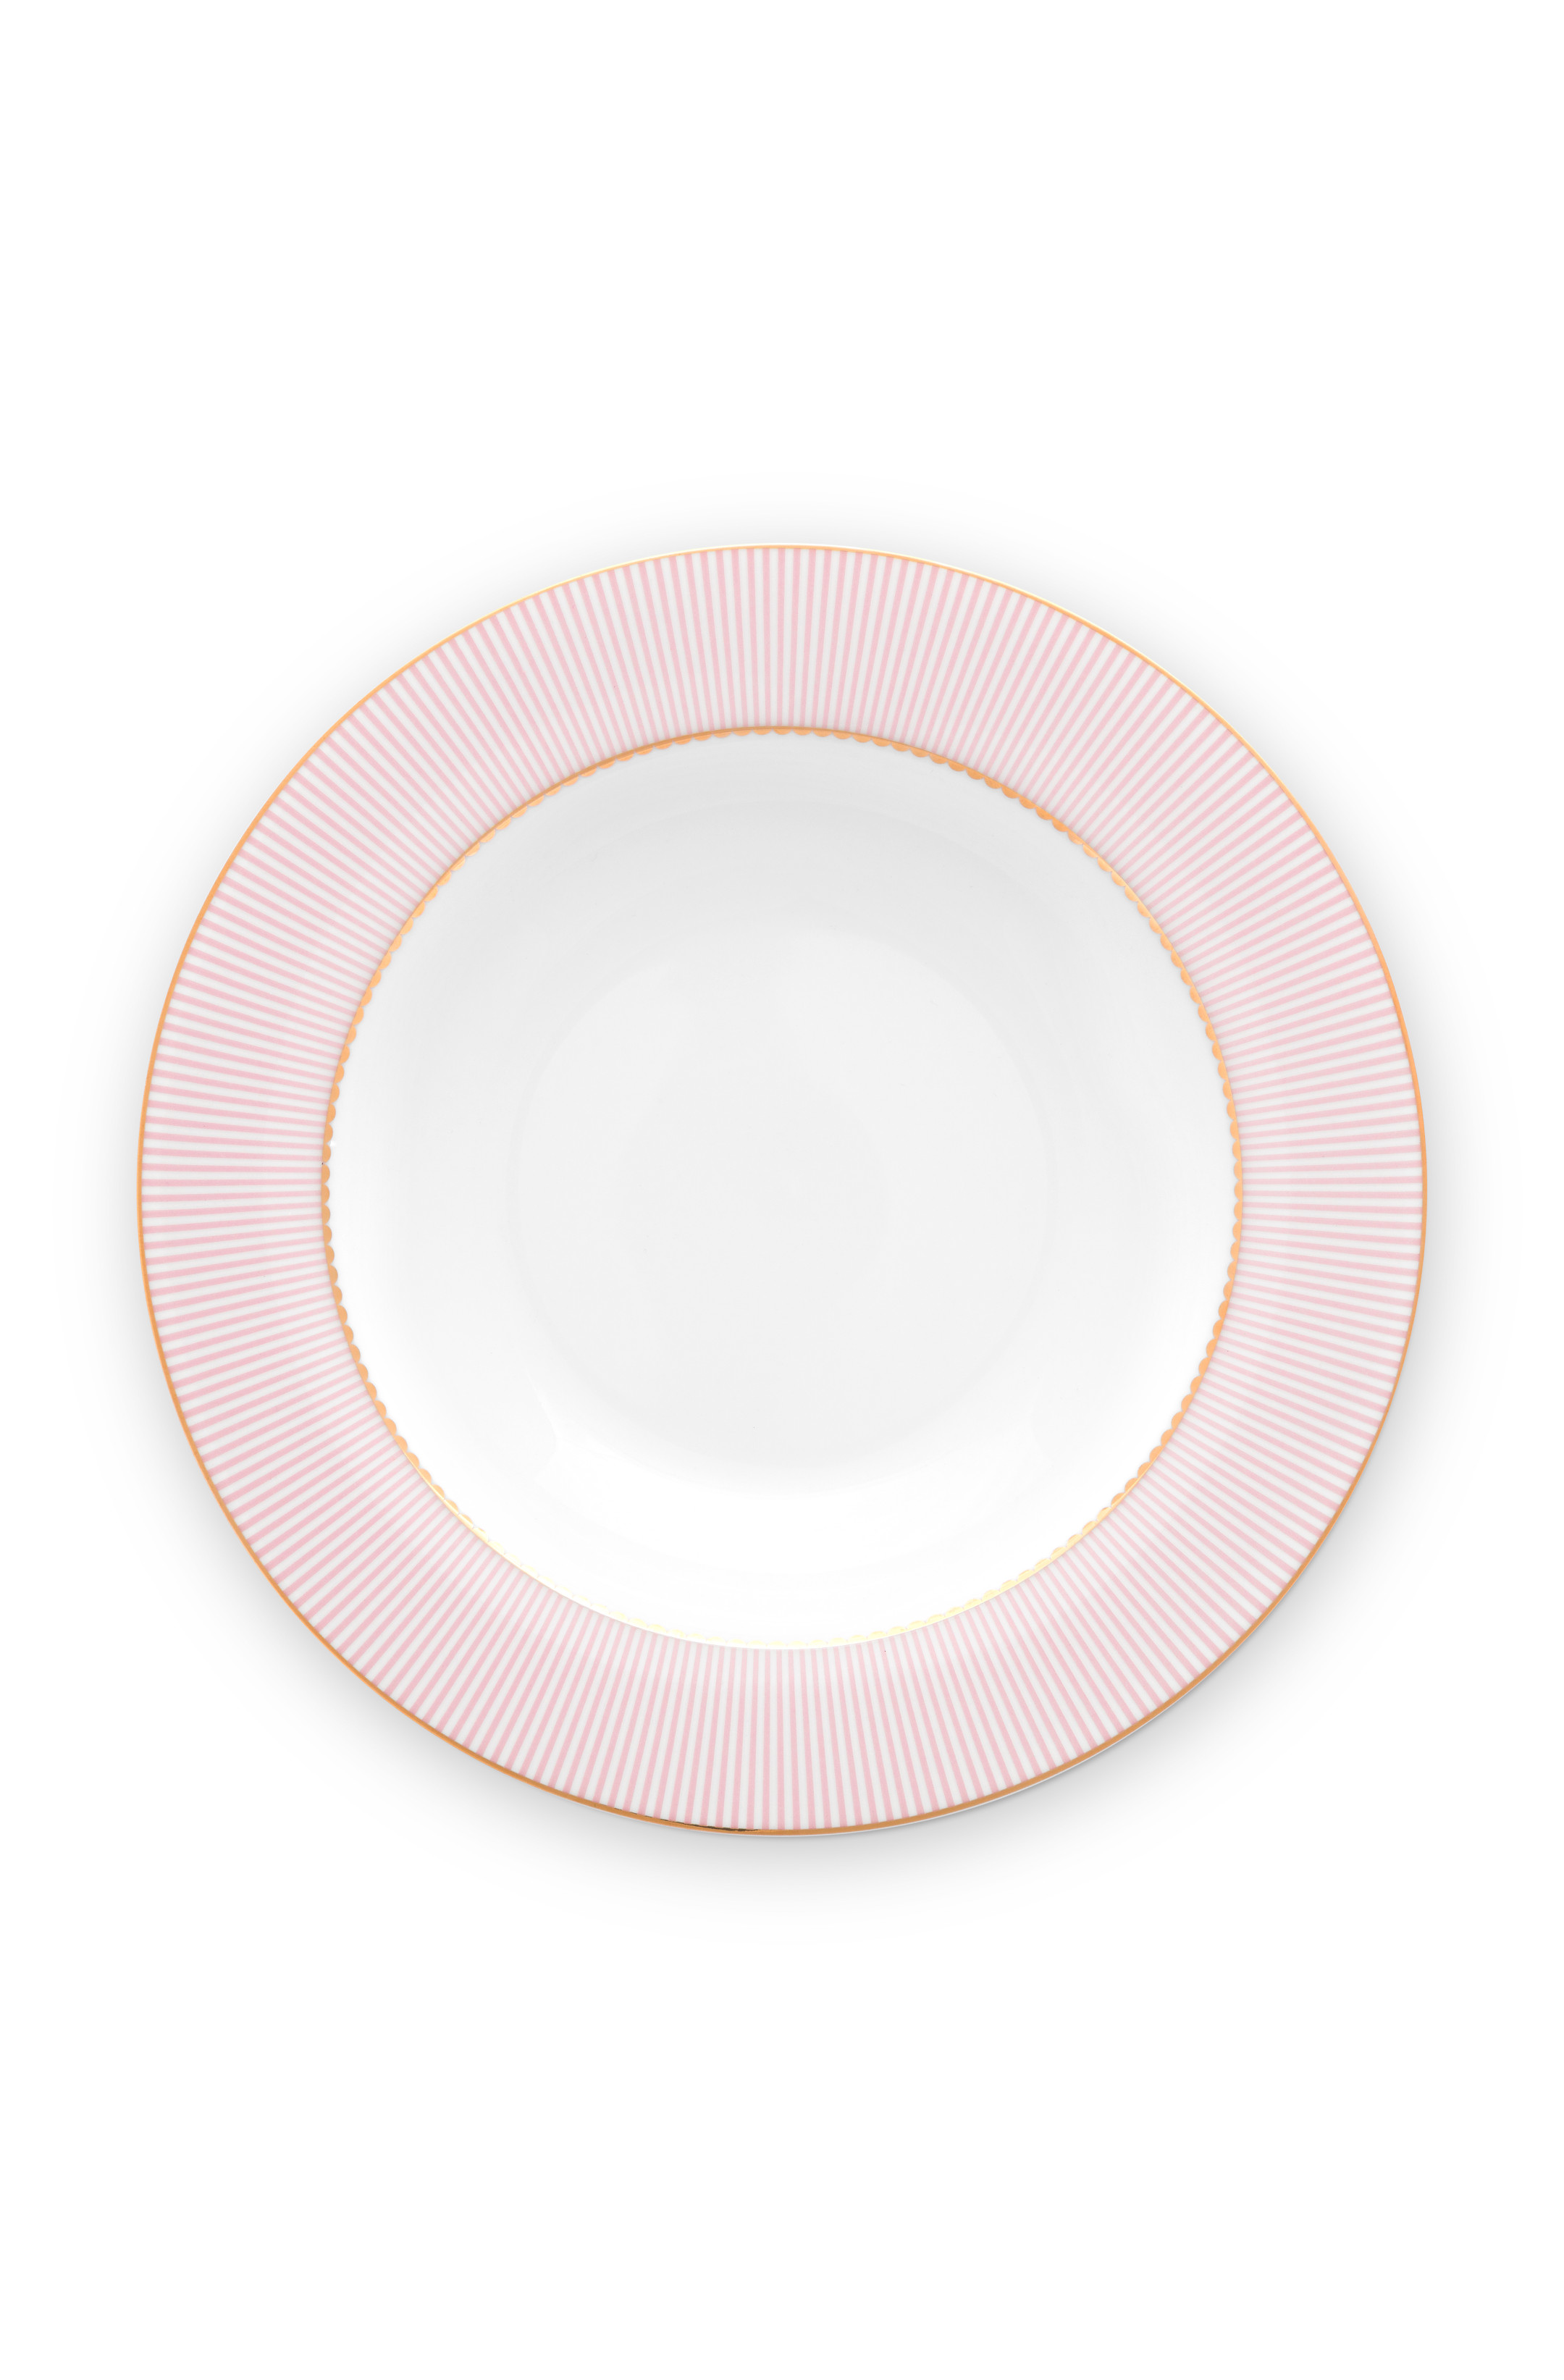 Pip Studio La Majorelle Soup Plate Pink (21.5cm)